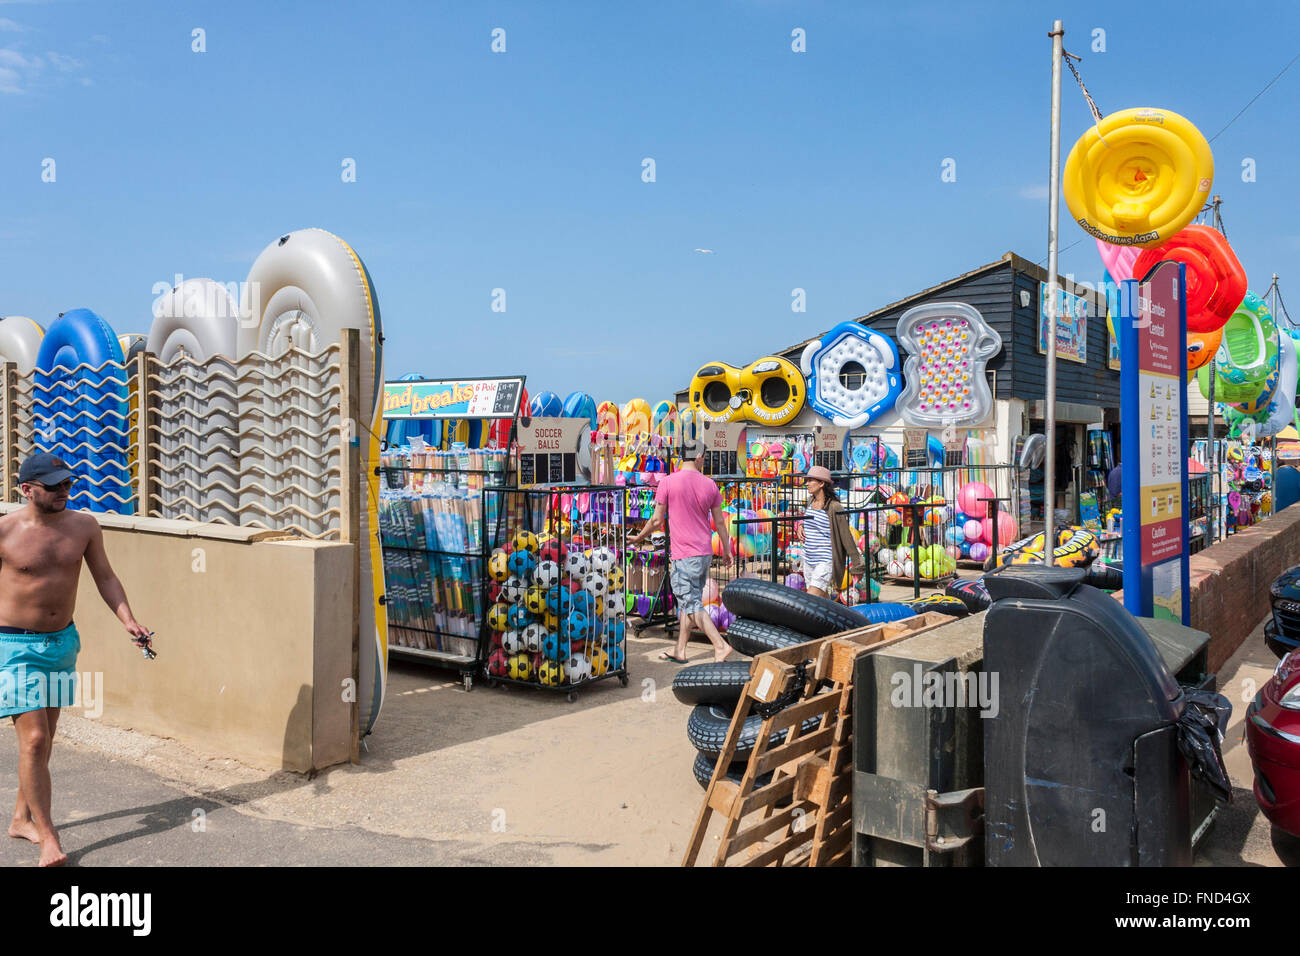 Boutique de plage, Camber Sands, seigle, Sussex, England, GB, UK Banque D'Images